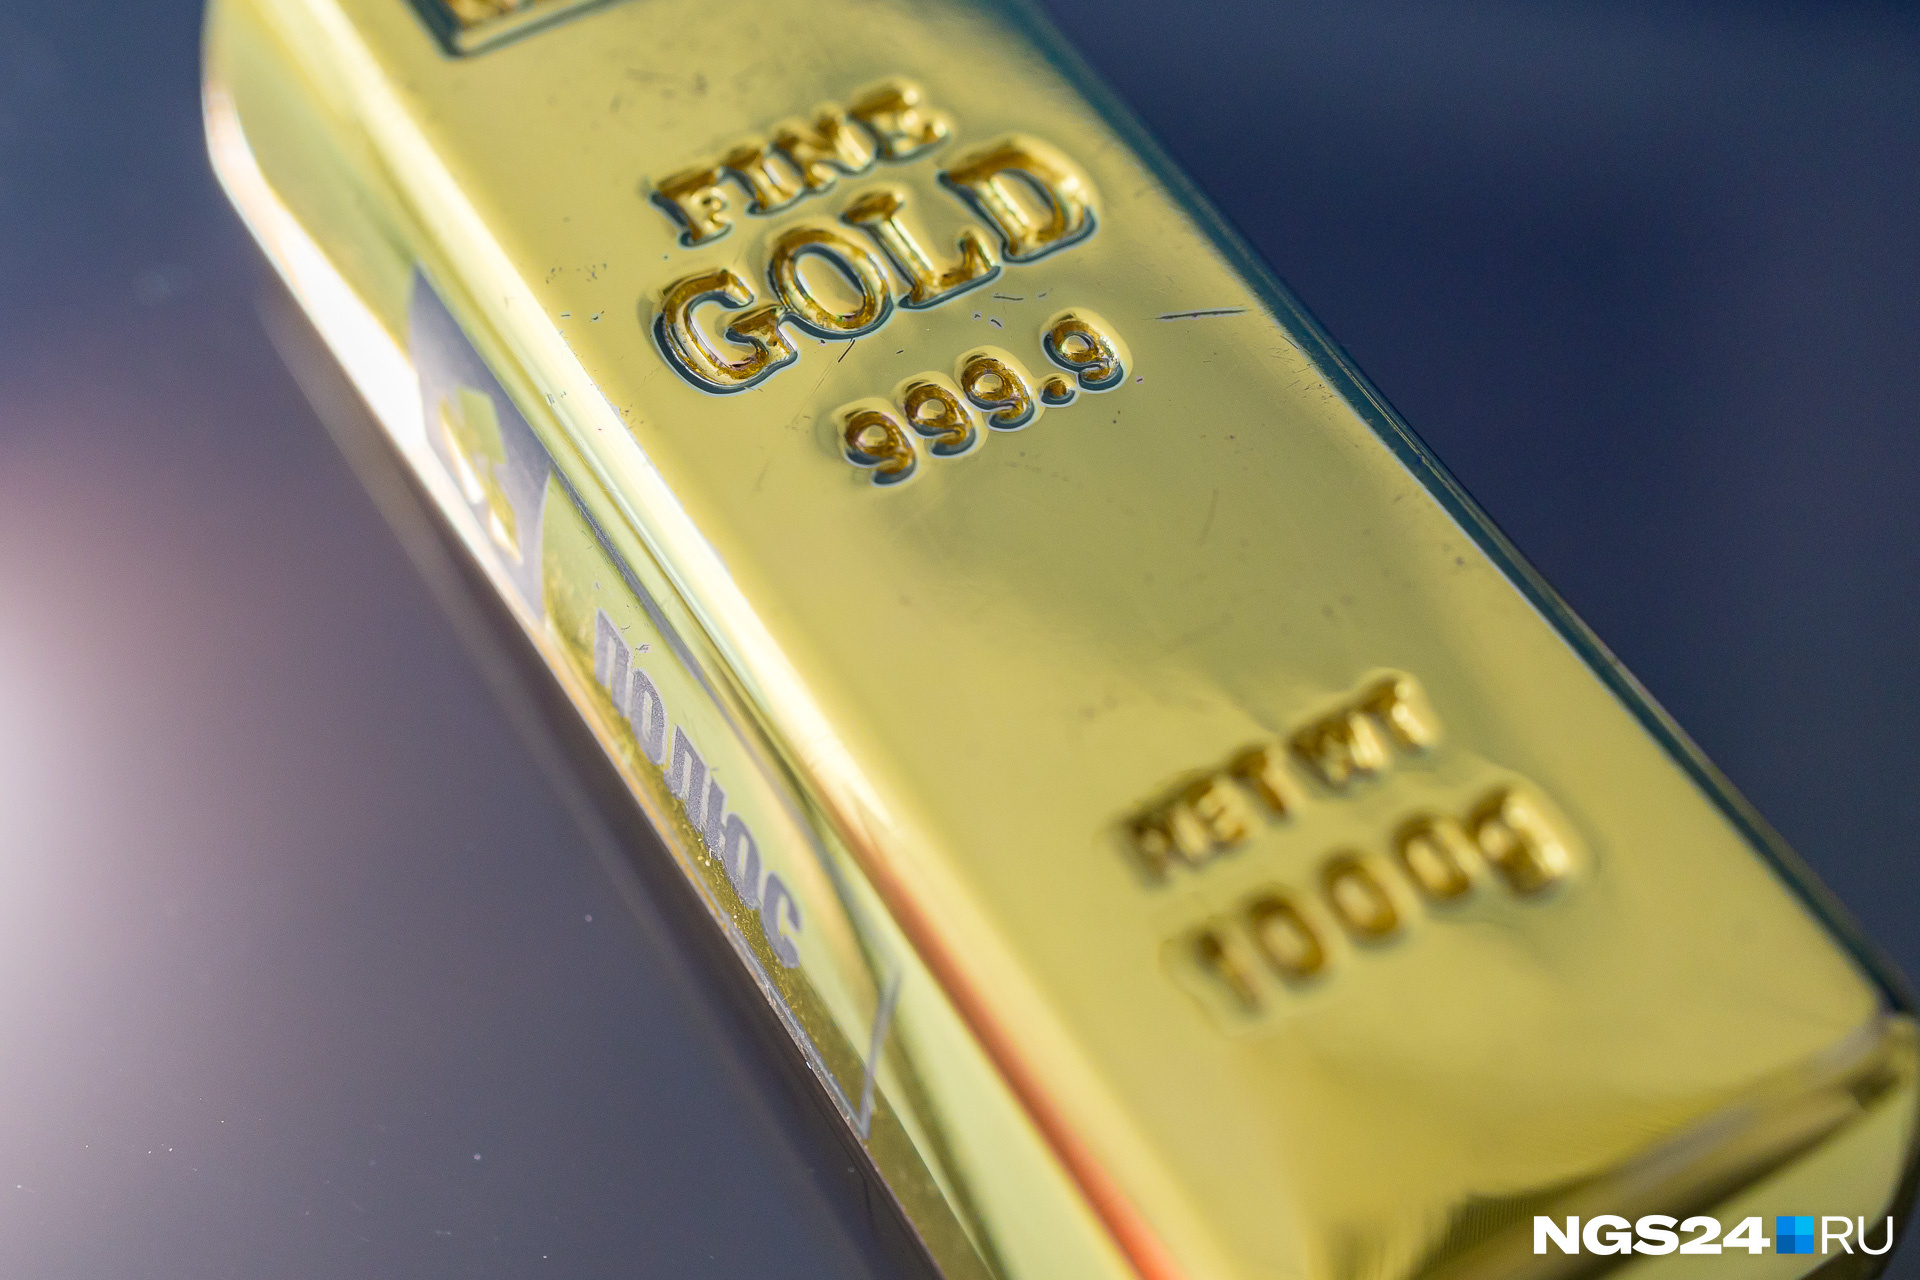 Хочется подержать настоящее золото в руках? Помните, что любые царапины и потертости ударят по стоимости слитка